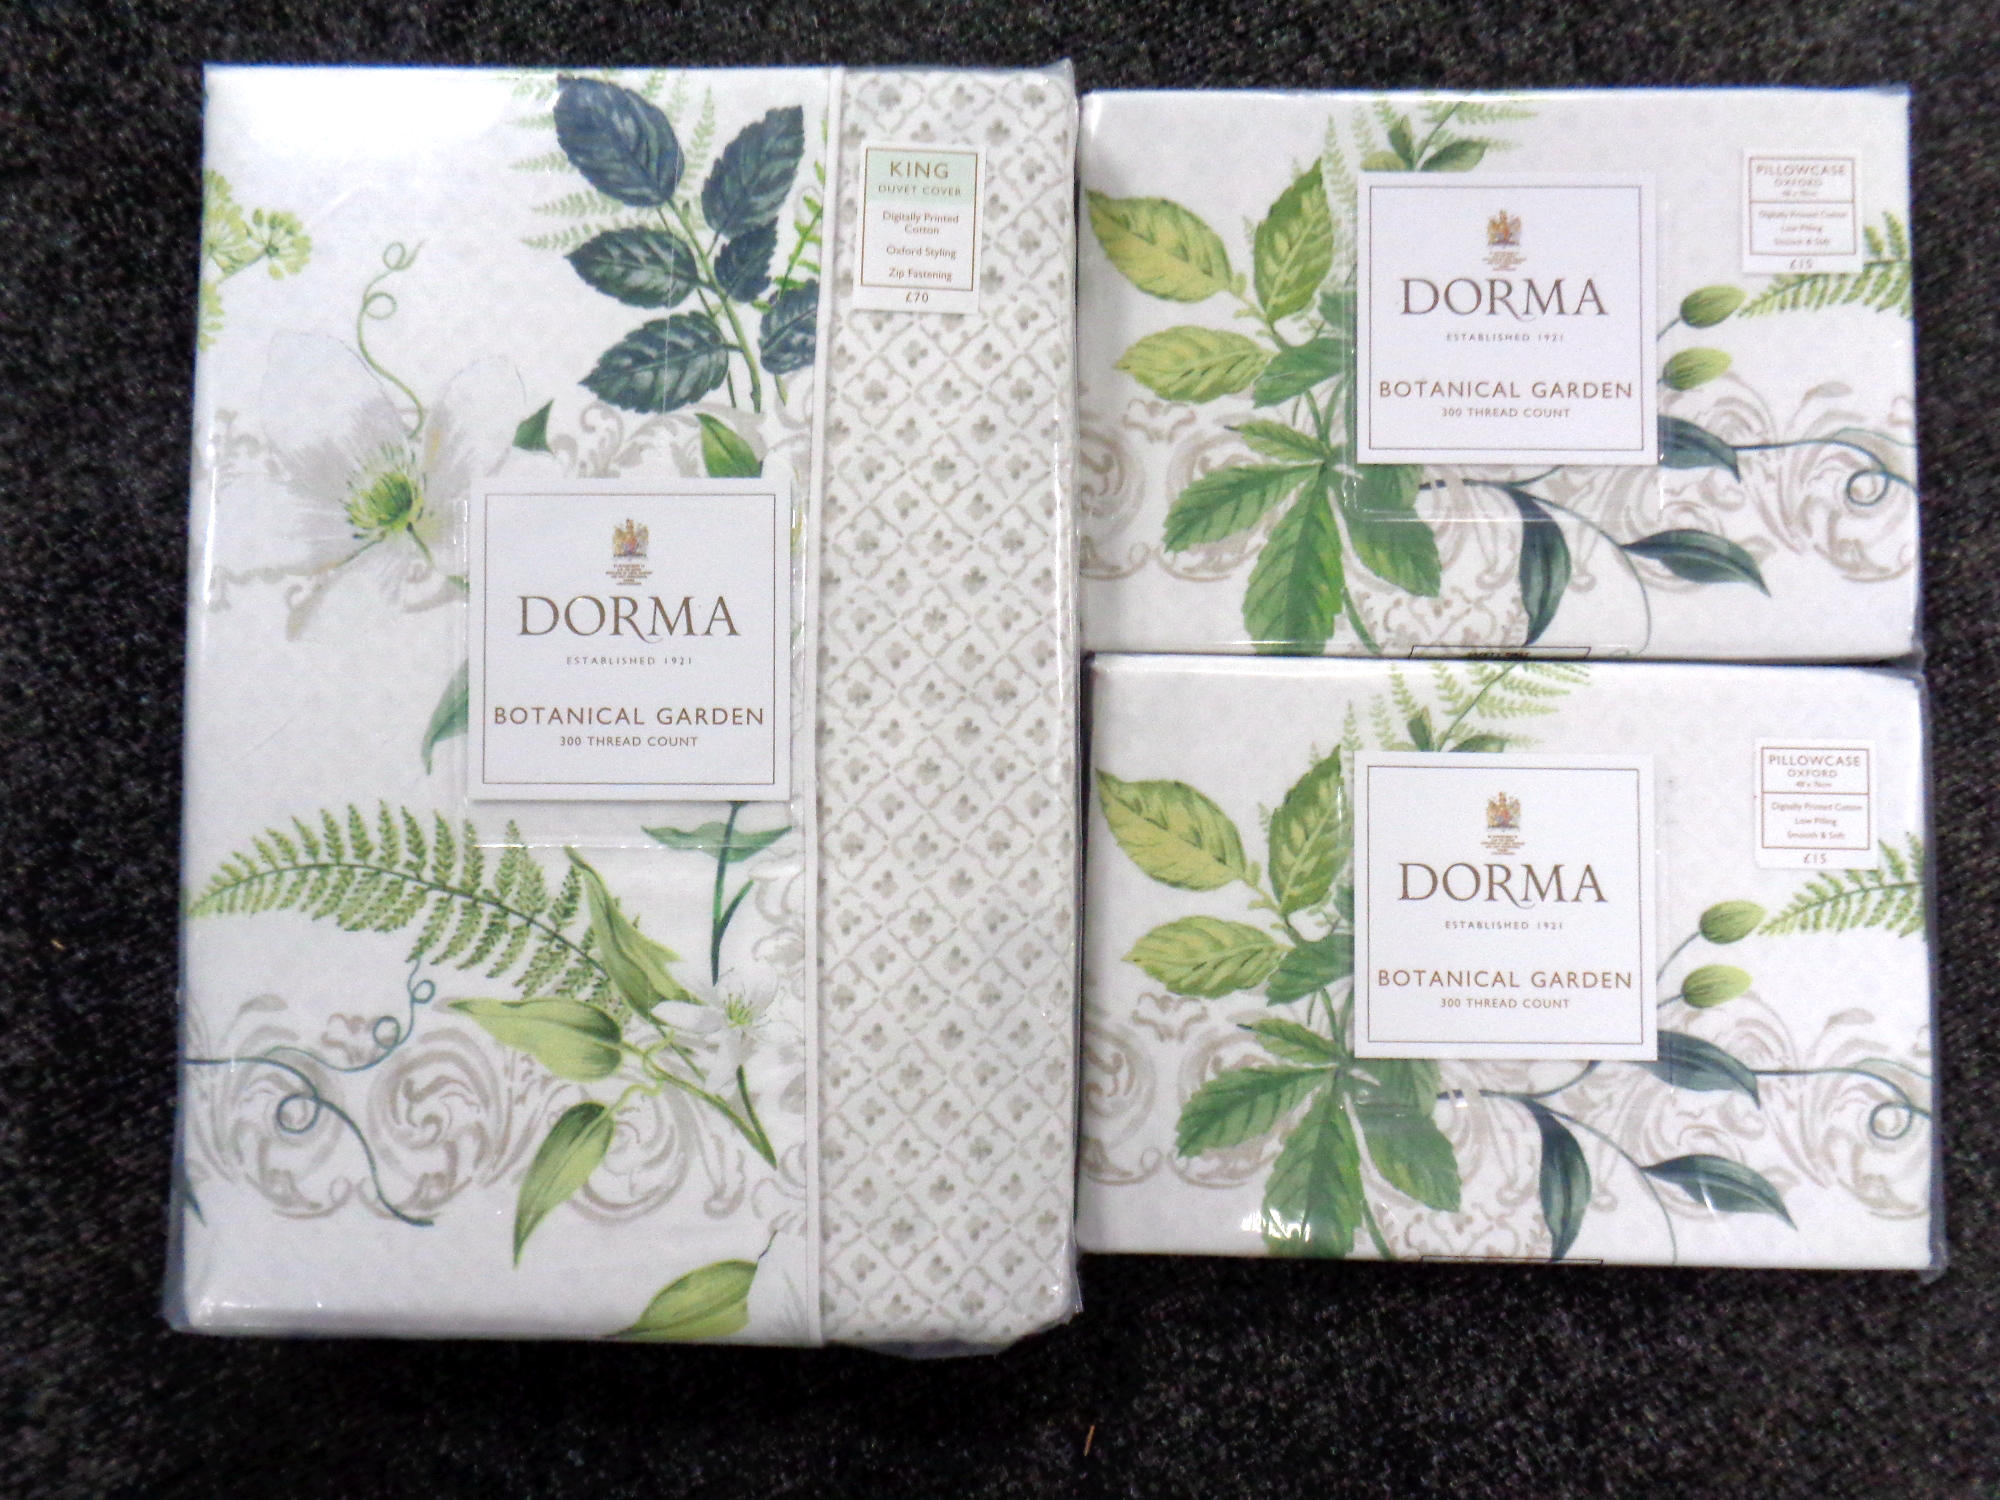 A Dorma Botanical Garden 300 thread count king size duvet cover,